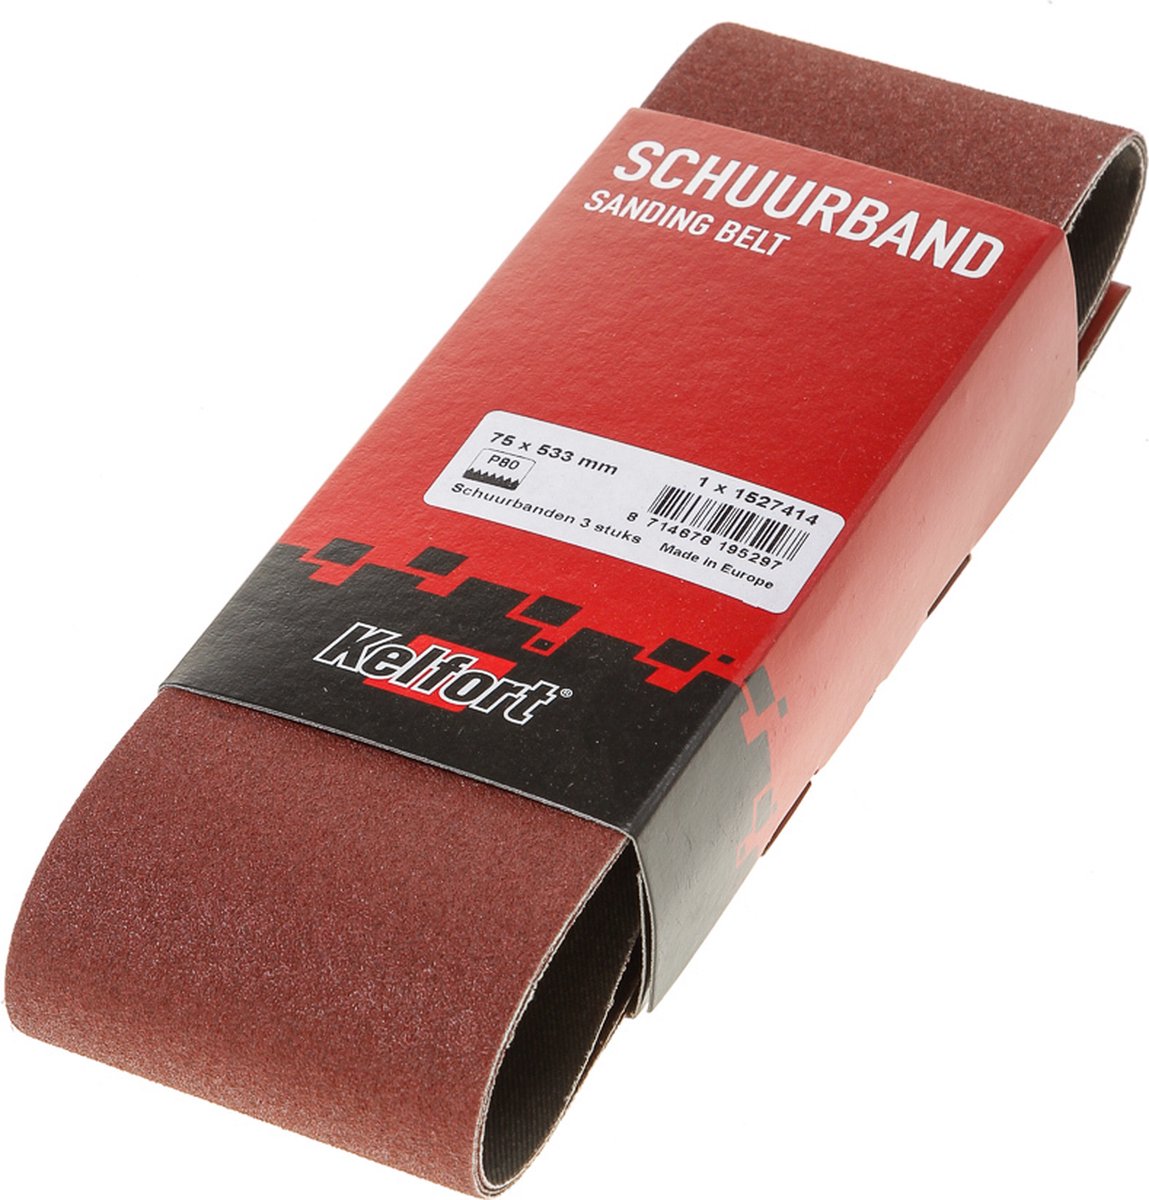 Schuurband 75x533 k80 (3)